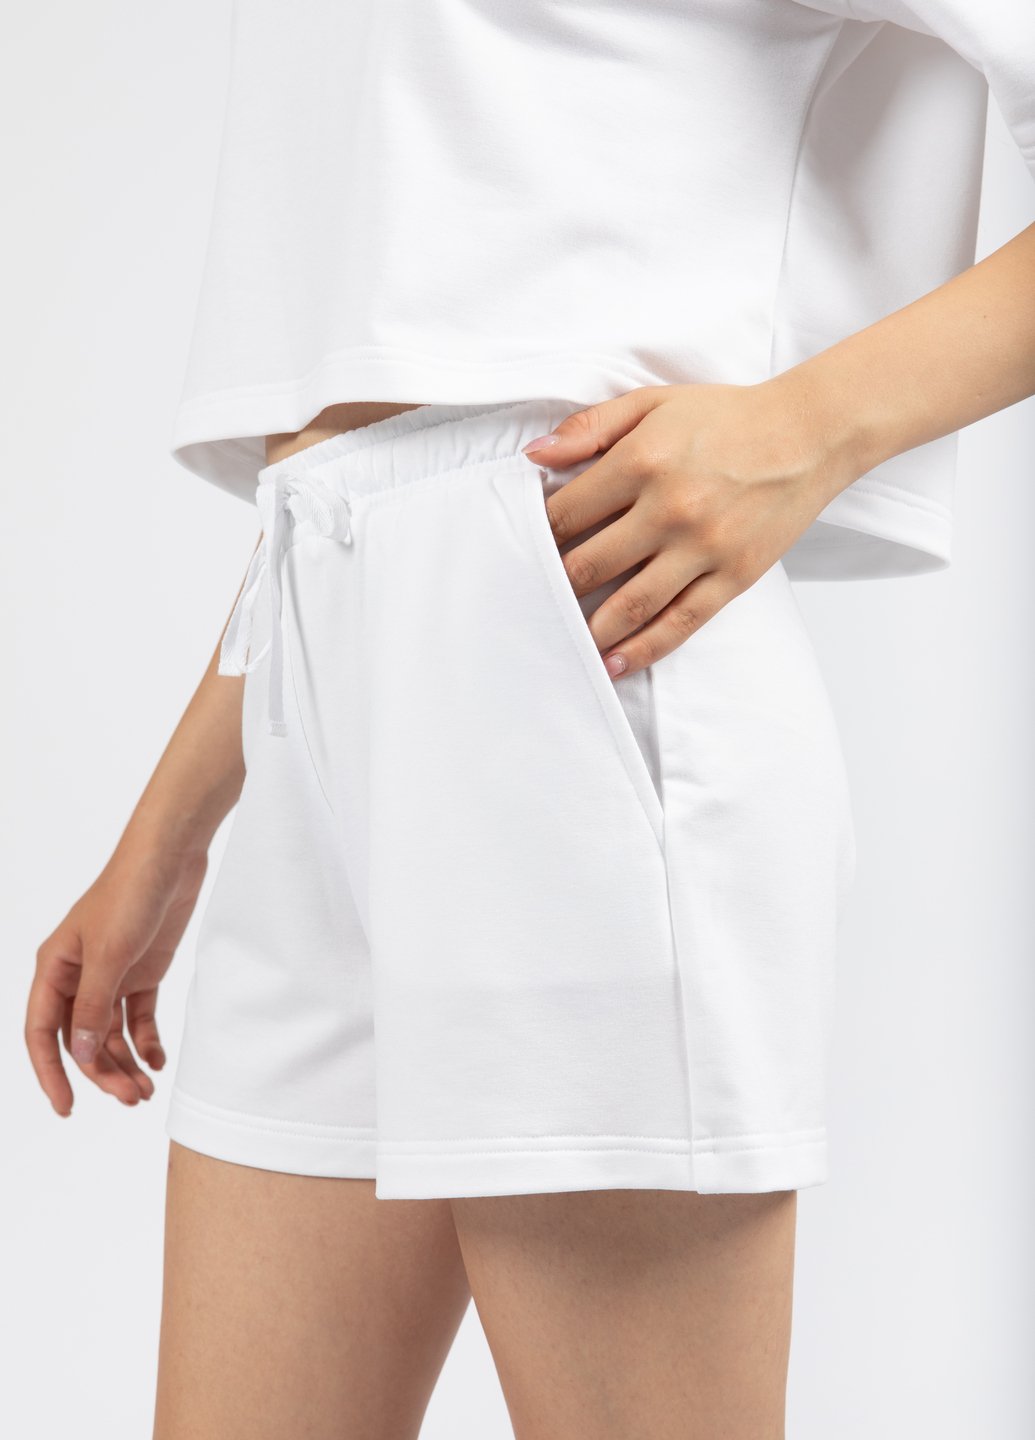 Купить Трикотажные шорты женские Merlini Бастия 300000025 - Белый, 42-44 в интернет-магазине